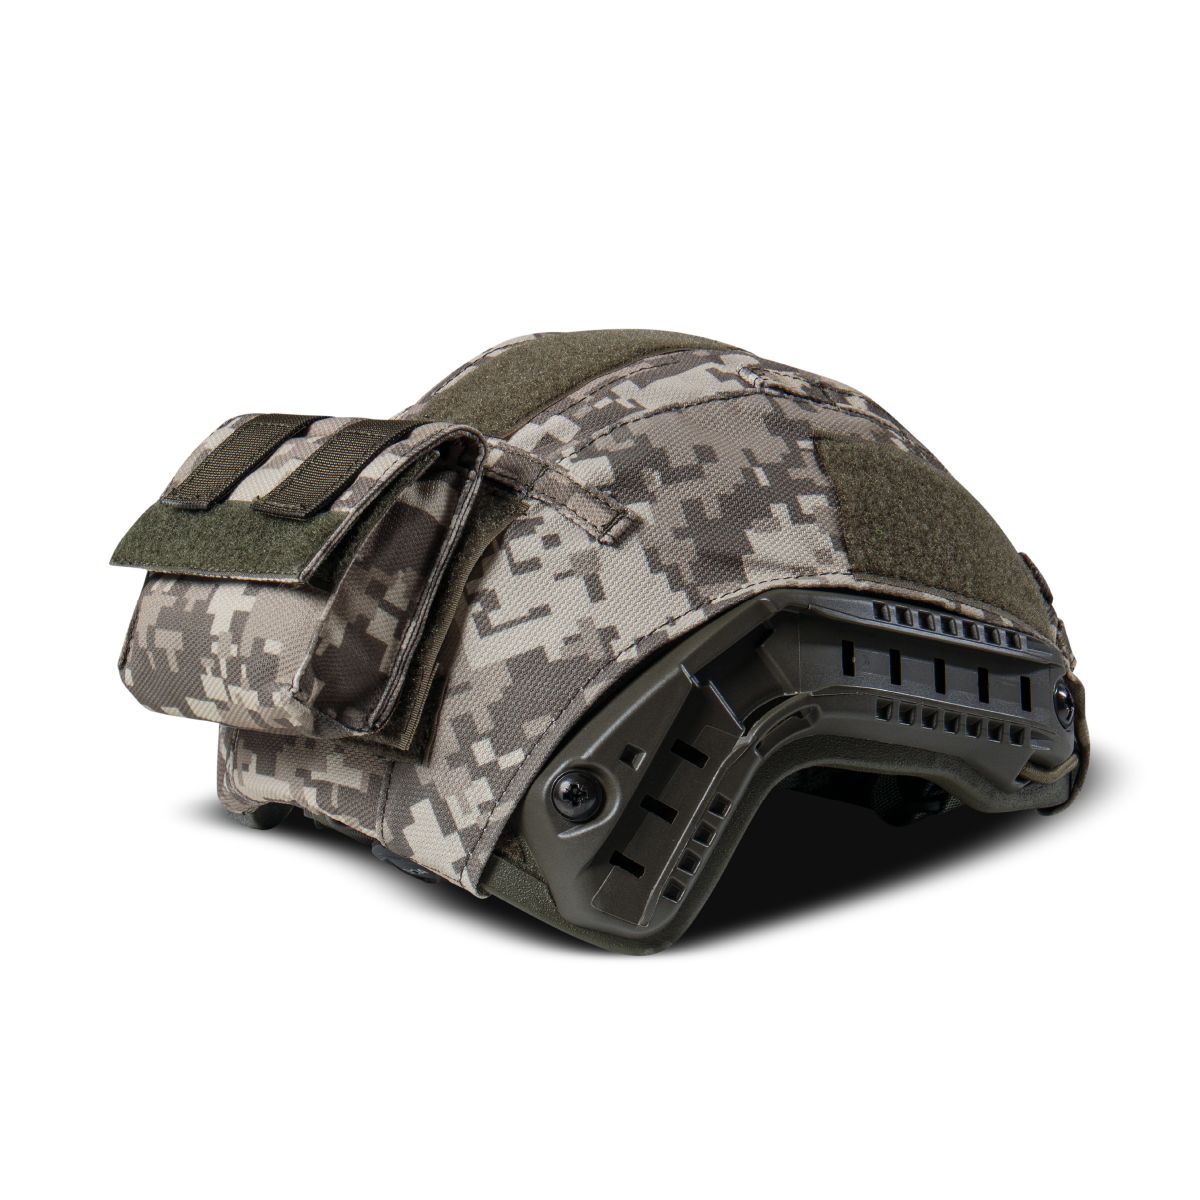 Кевларовый шлем HP-05 (Maskpol) тип "high cut". Производитель: Польша. Олива. (L) 6